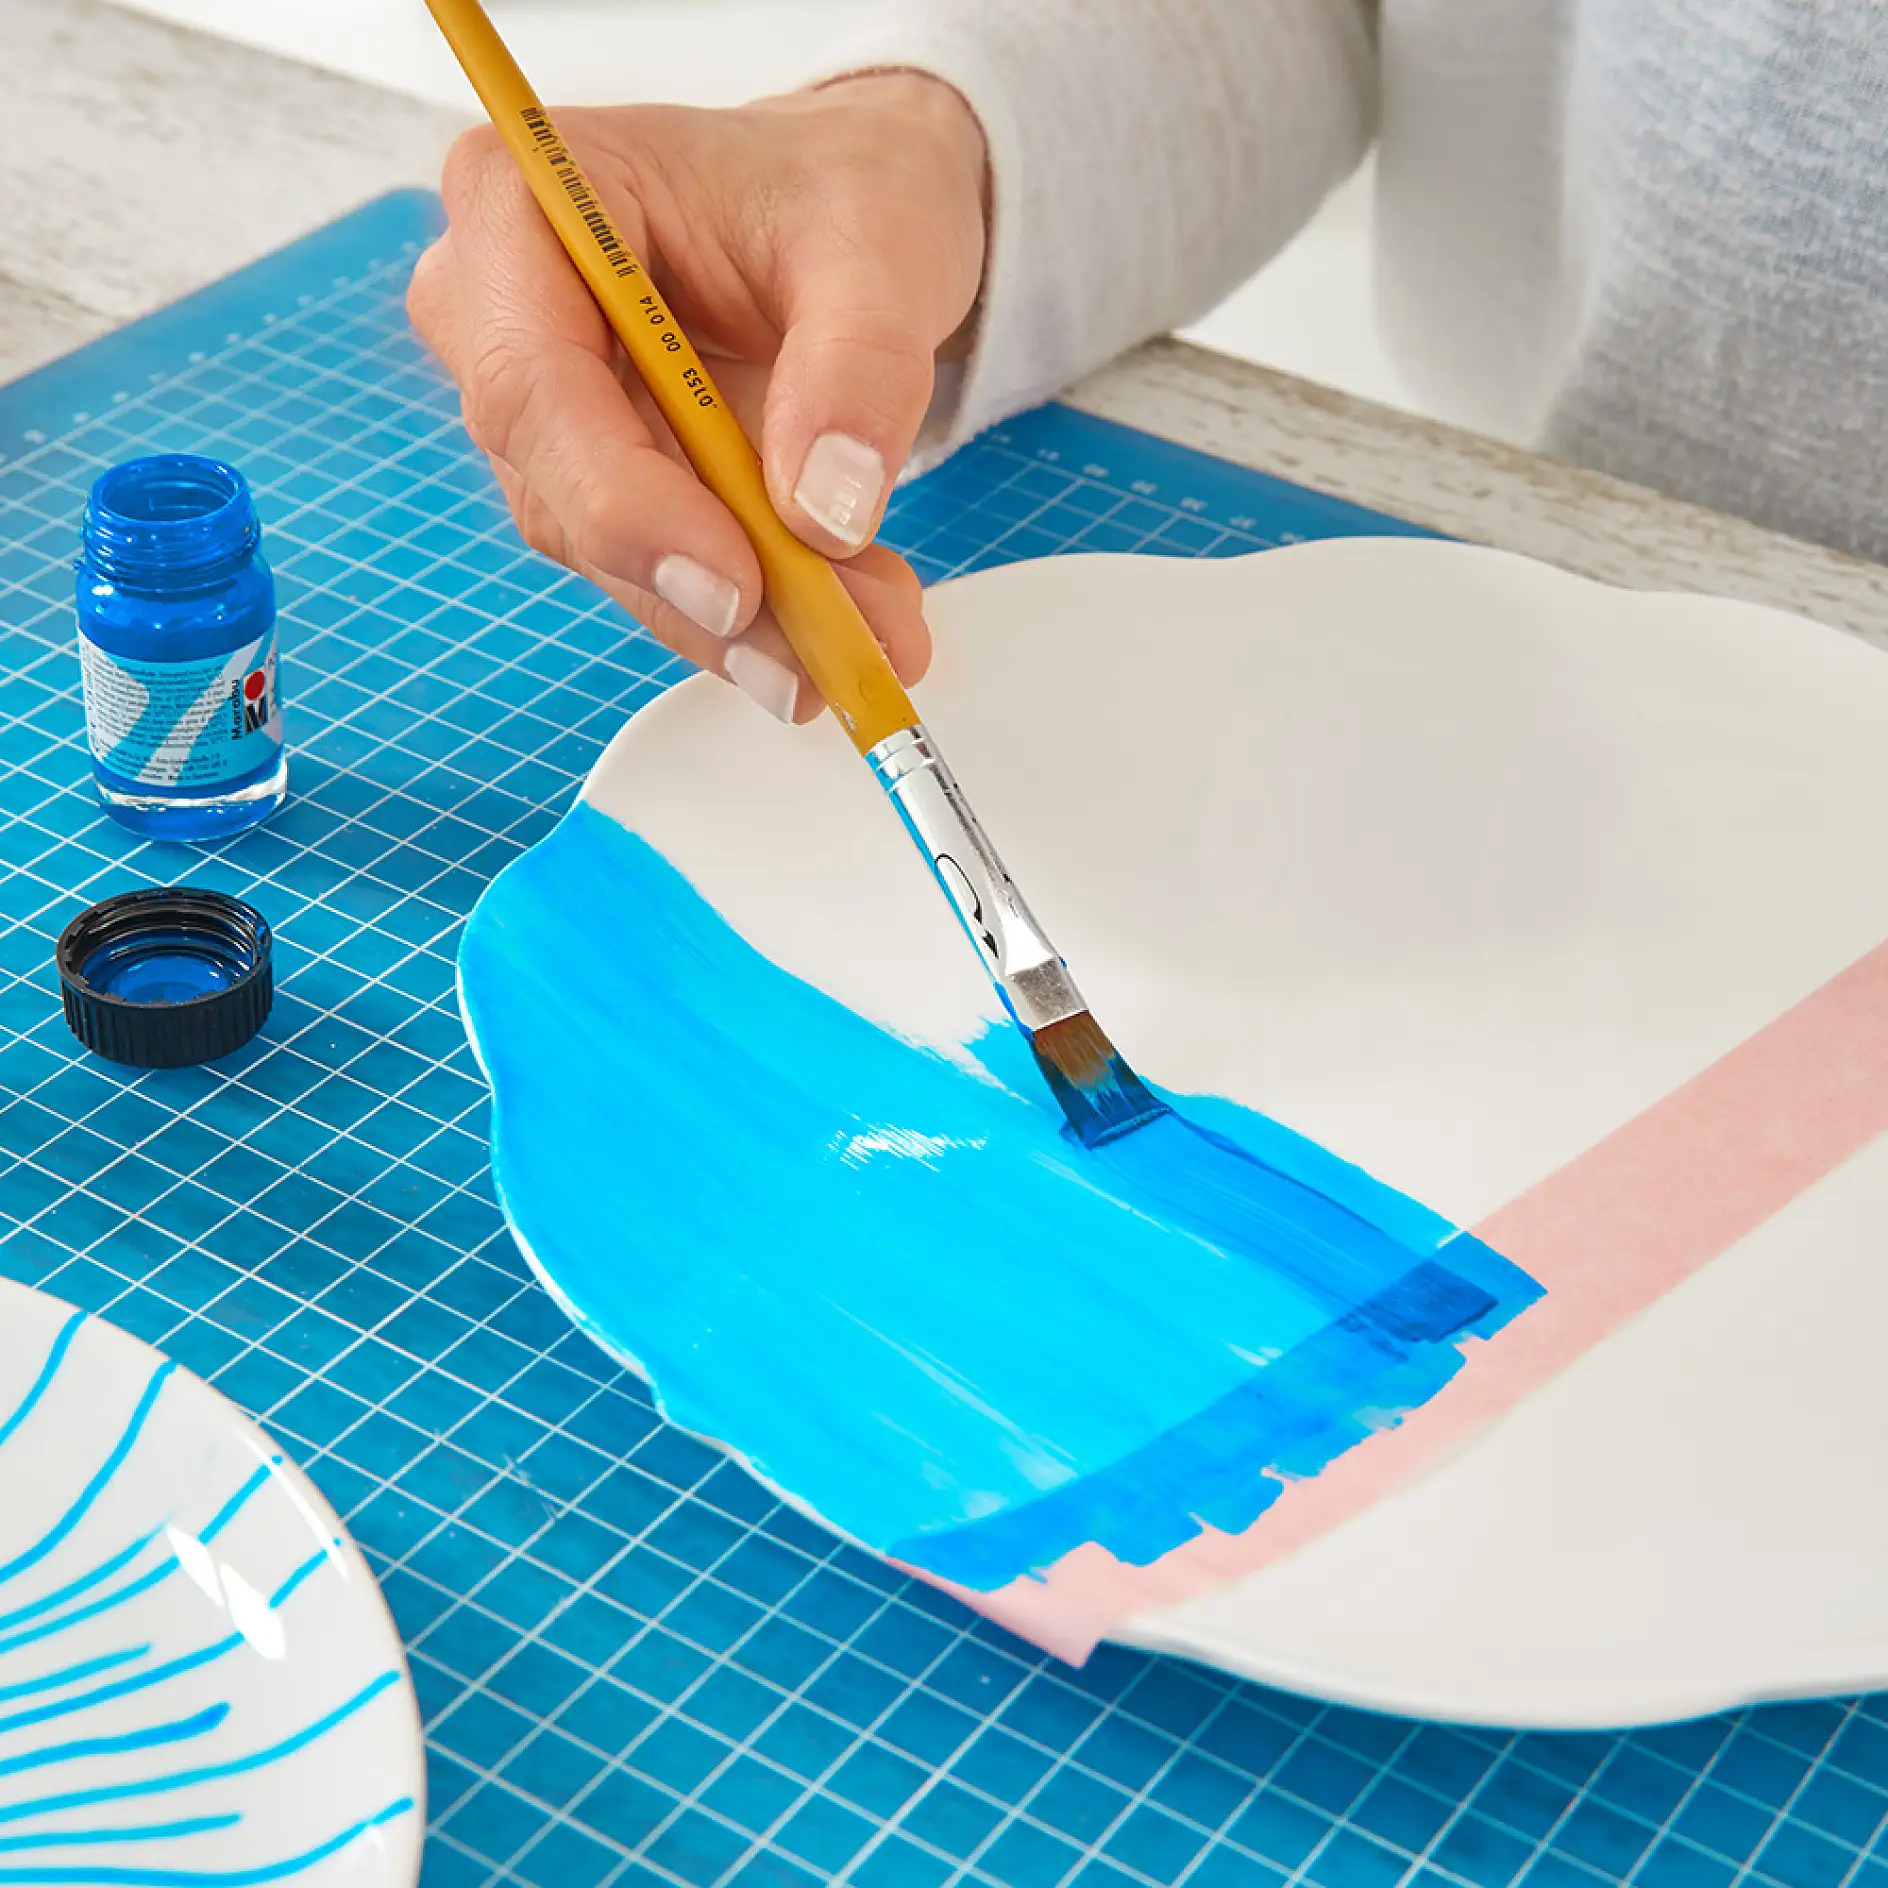 Χρησιμοποιήστε tesa® ταινία μασκαρίσματος για ταπετσαρίες για να φτιάξετε DIY διακοσμητικά πιάτα τοίχου.